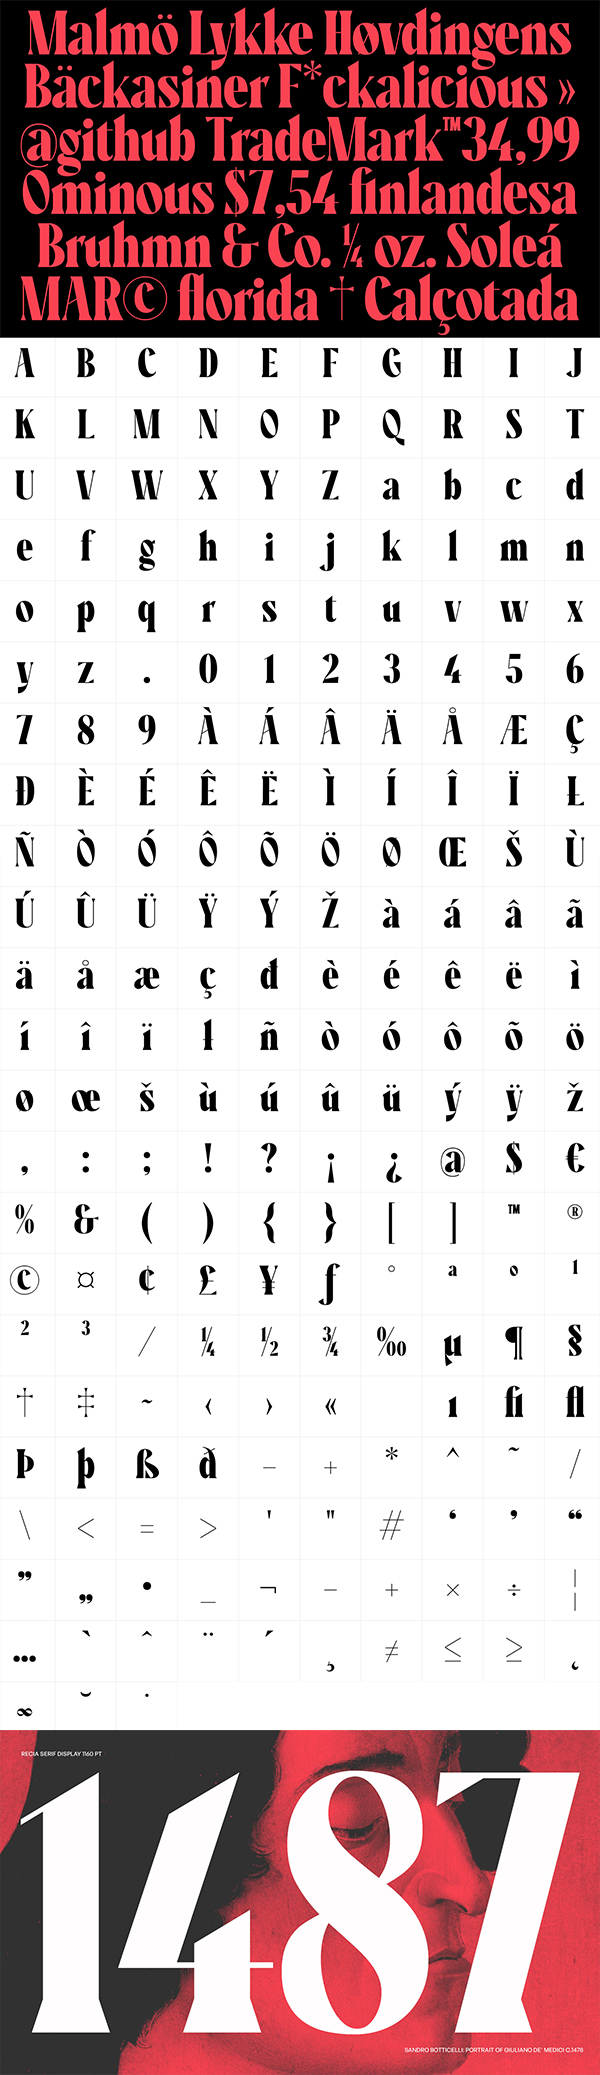 Recia Serif Display Font